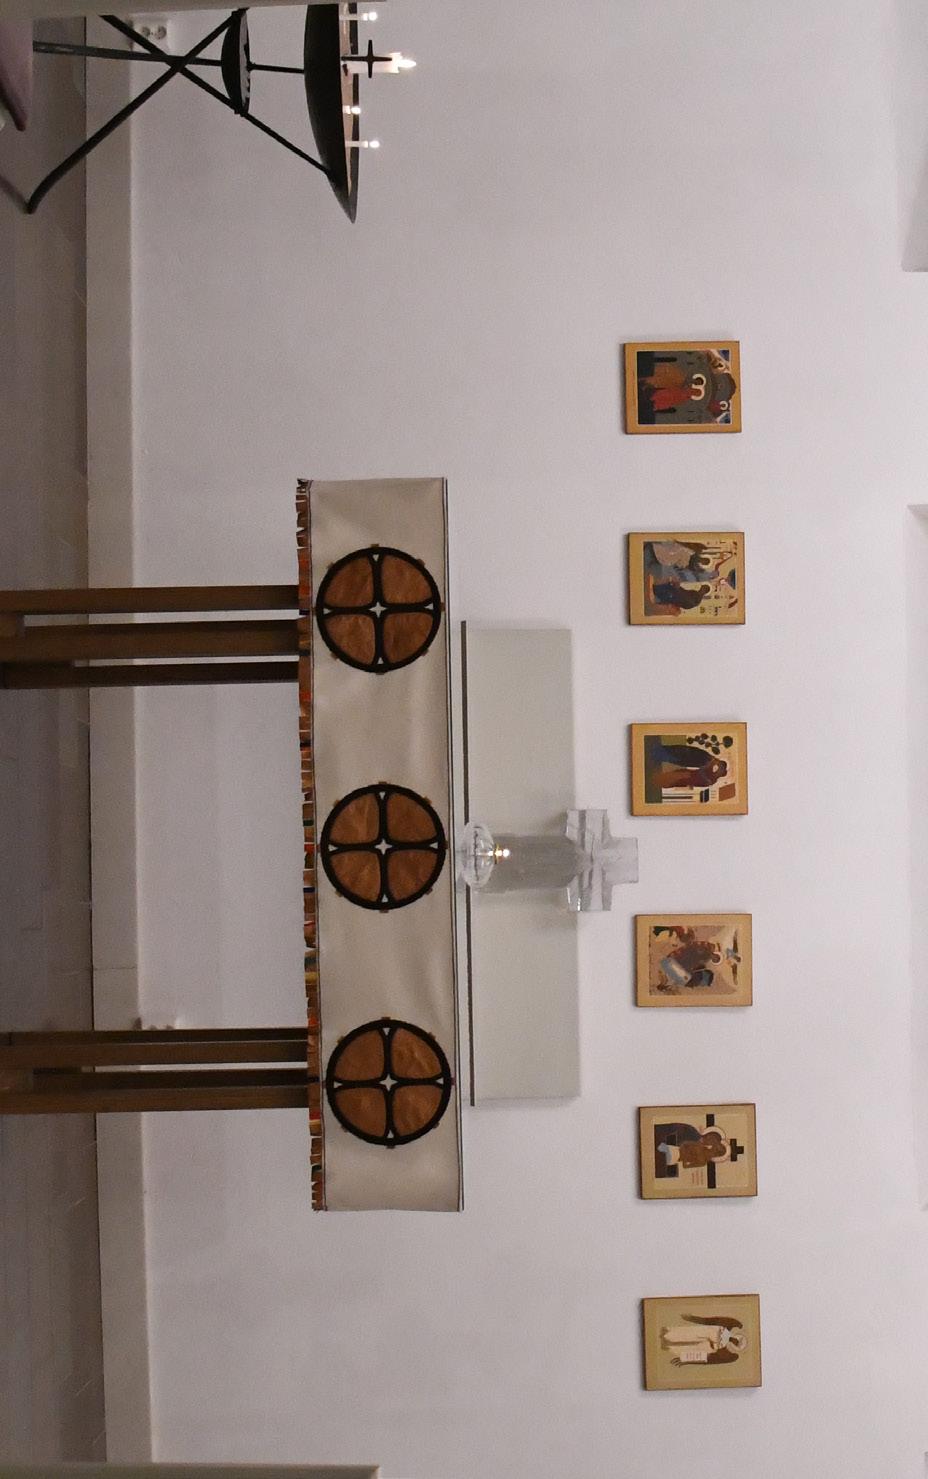 Samiskt hantverk smyckar Mariakapellet När jag blev tillfrågad om uppdraget att göra ett ett samiskt altarbrun till Härnösand domkyrka och Mariakapellet fick